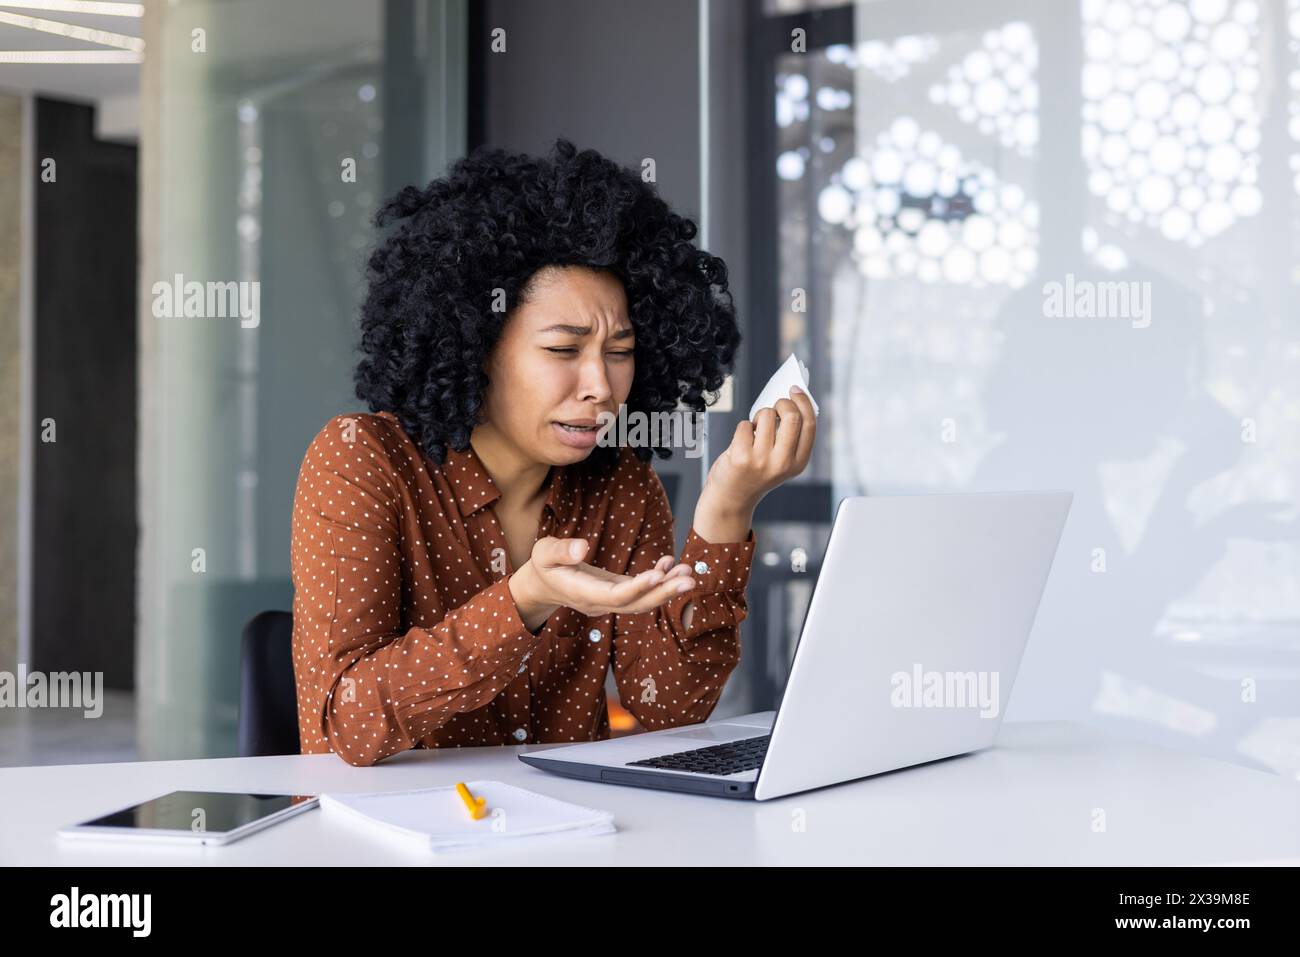 Eine beunruhigte Geschäftsfrau, die professionelle Hilfe durch eine Online-Beratung mit einem Psychotherapeuten sucht, sichtbar aufgebracht und Tränen abwischt. Stockfoto